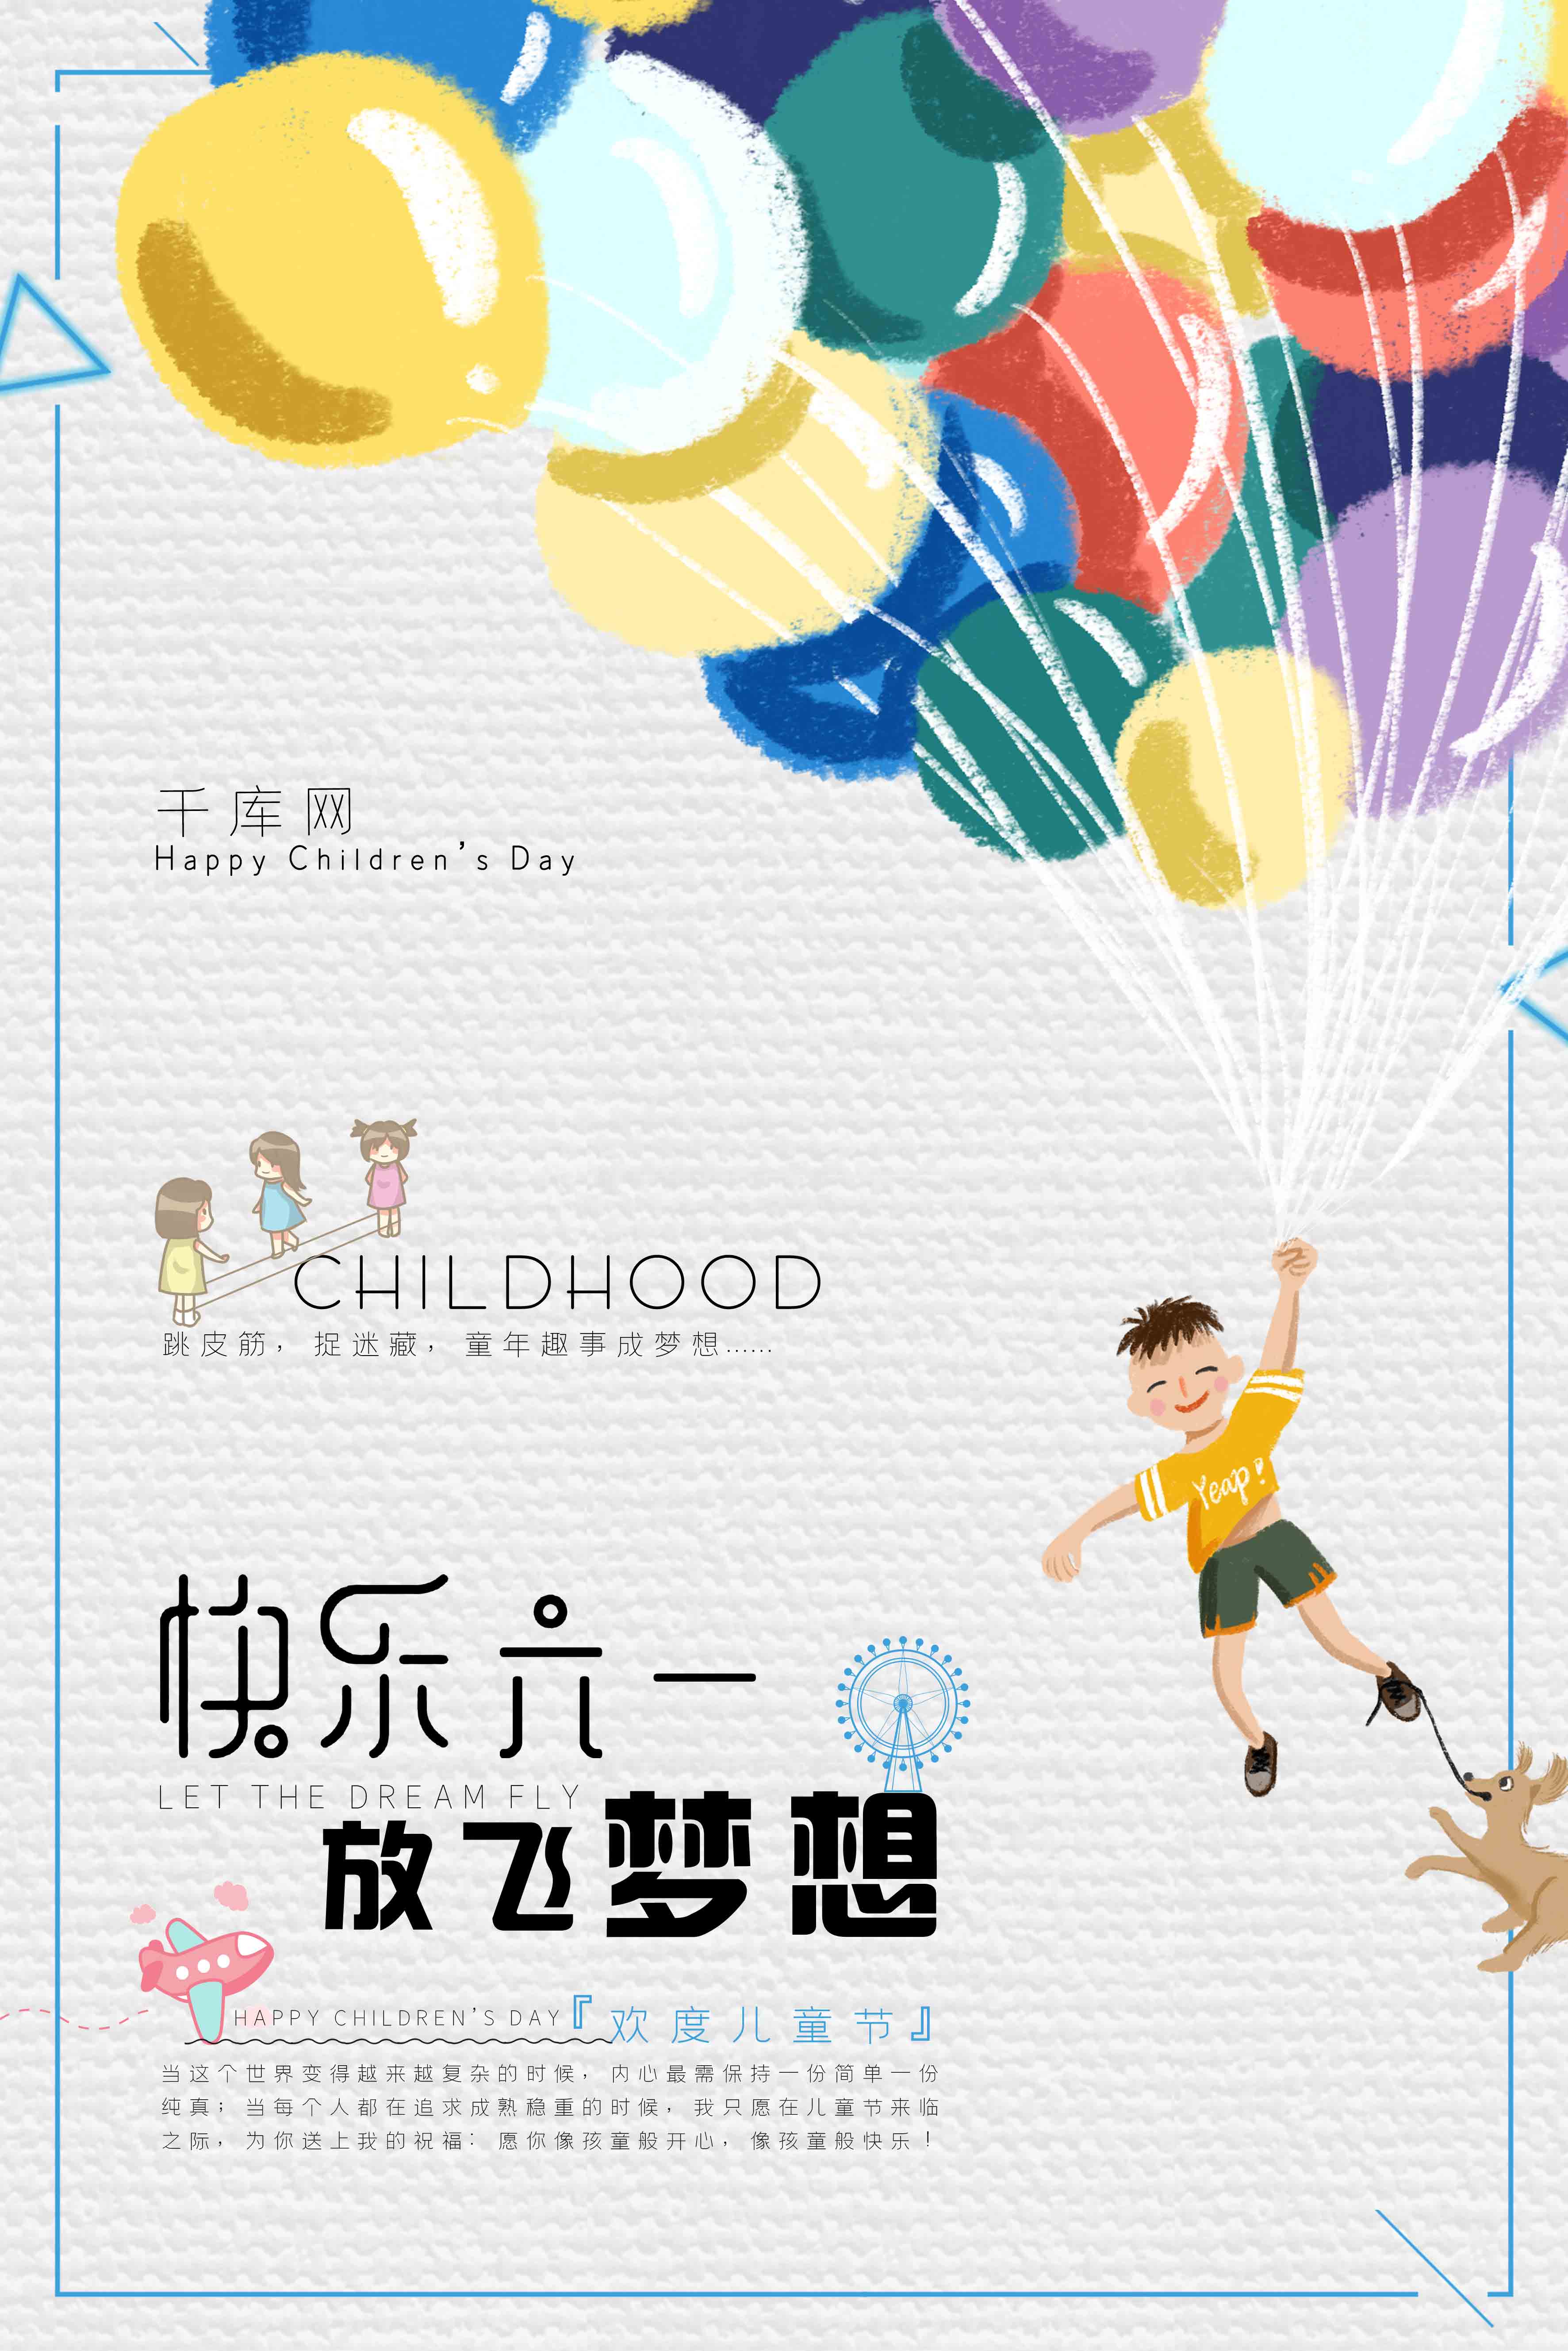 浅色简洁时尚气球背景快乐六一放飞梦想海报图片